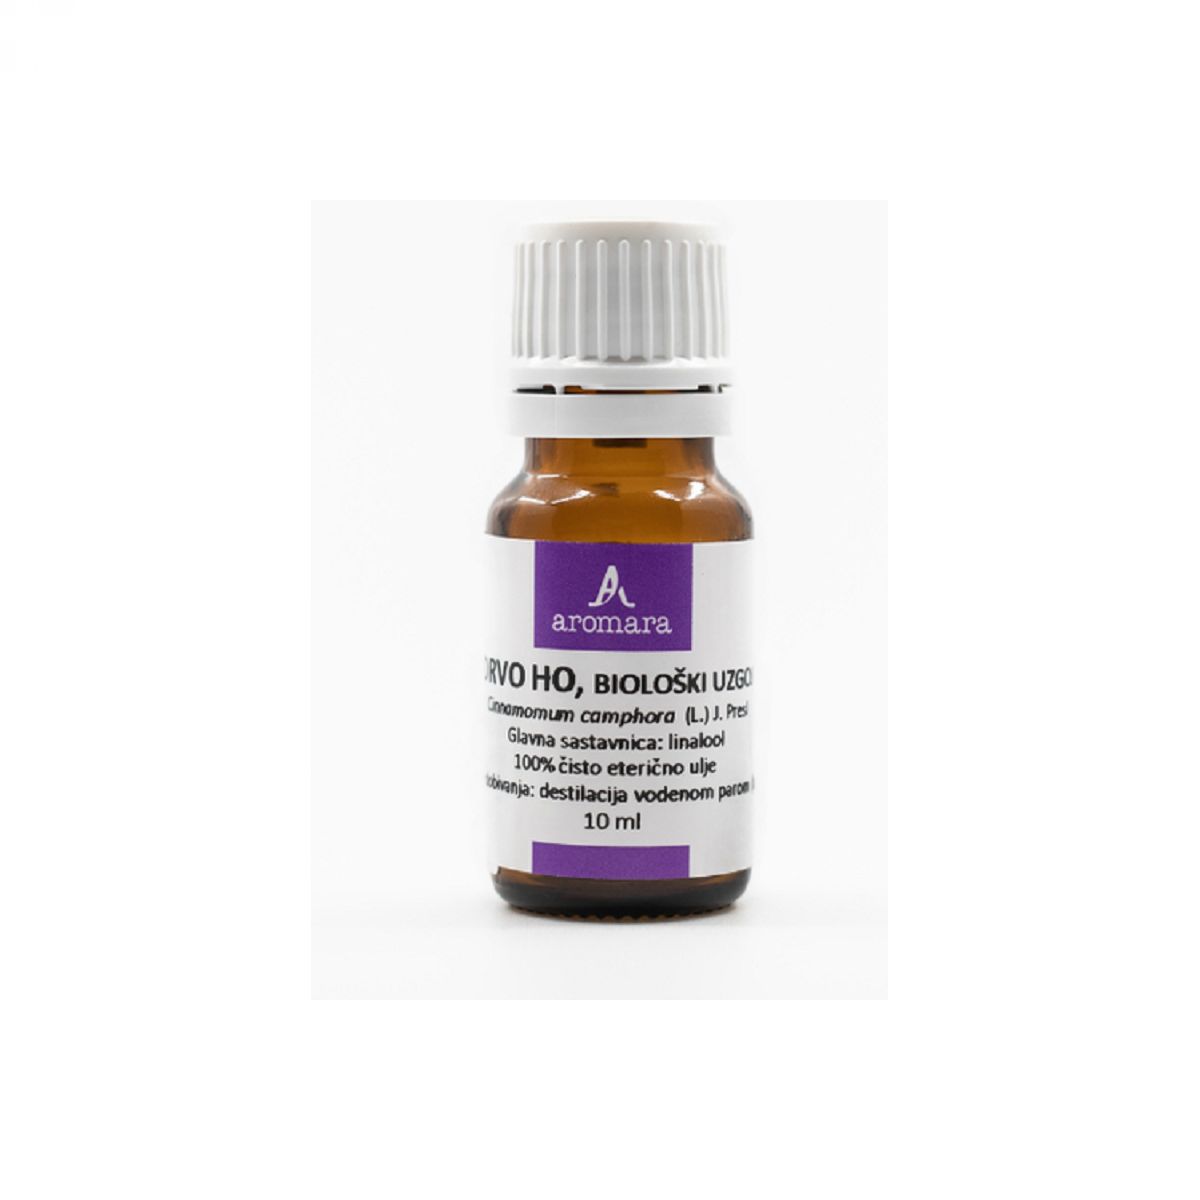 Kafra (Cinnamomum camphora ) BIO eterično olje, 10 ml - AROMARA